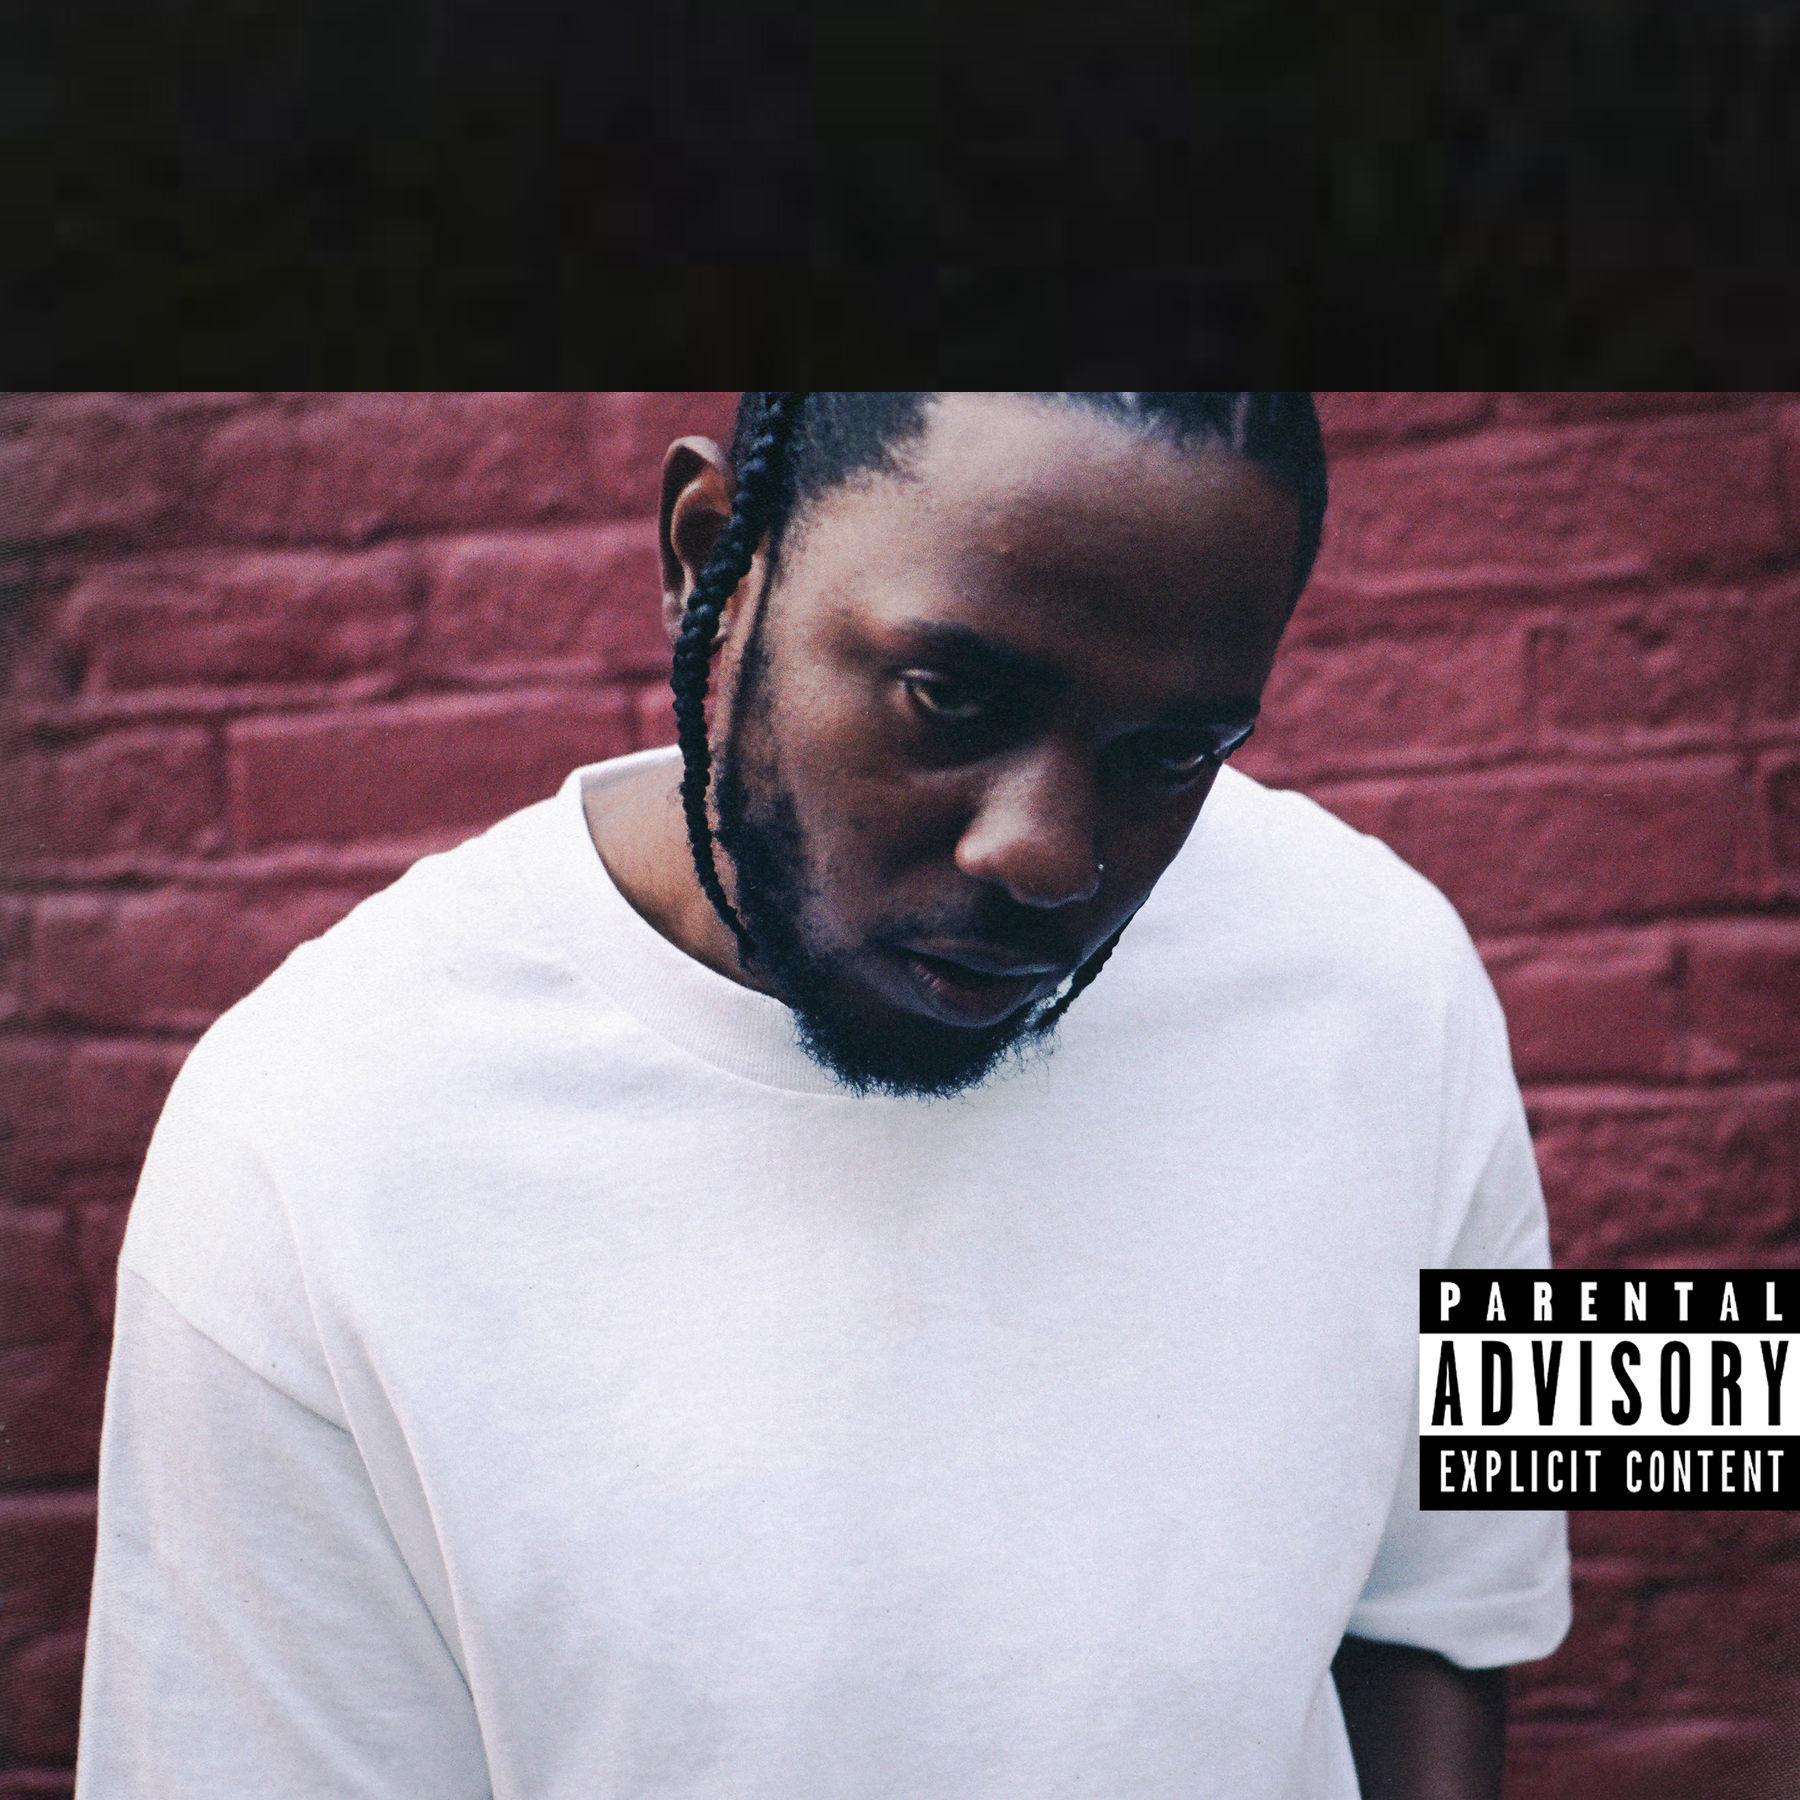 Kendrick Lamar - DAMN. (2017)